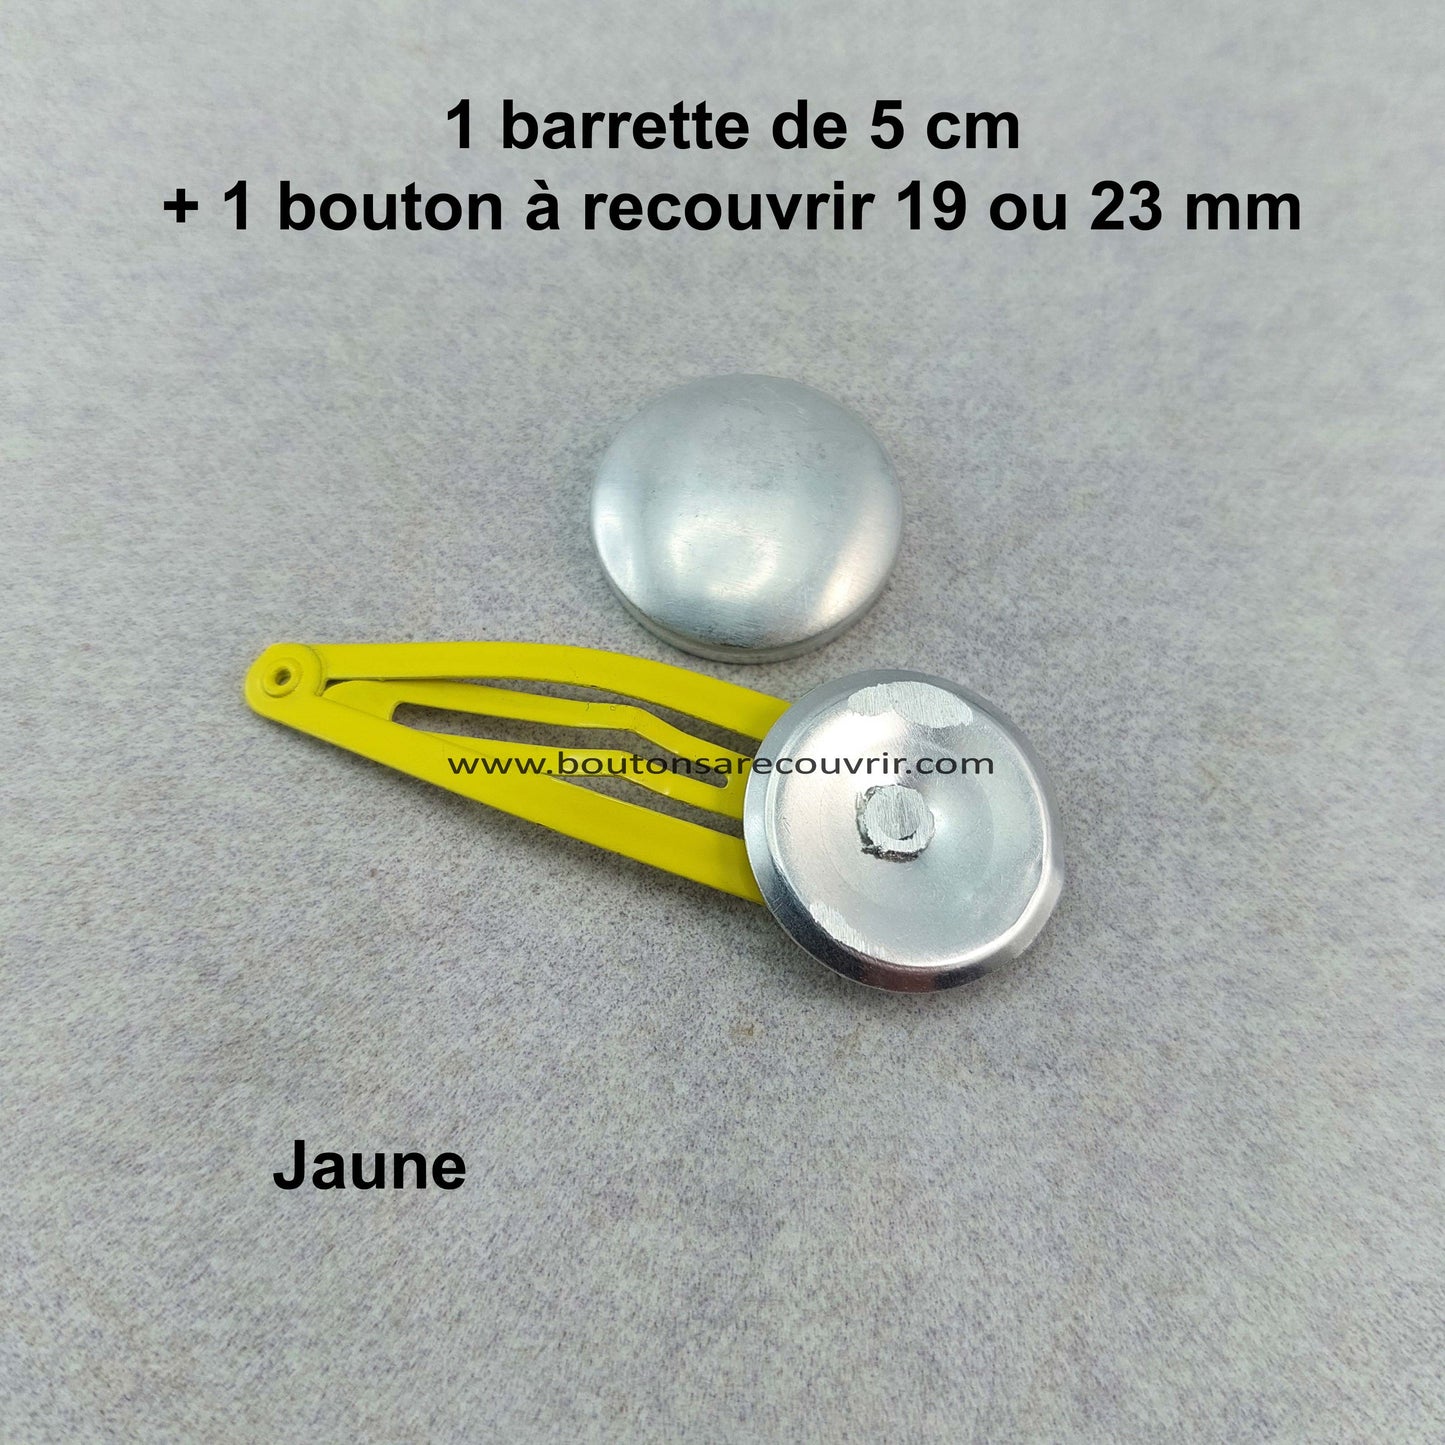 1 barrette de 5 cm - bouton à recouvrir 19 ou 23 mm - JAUNE